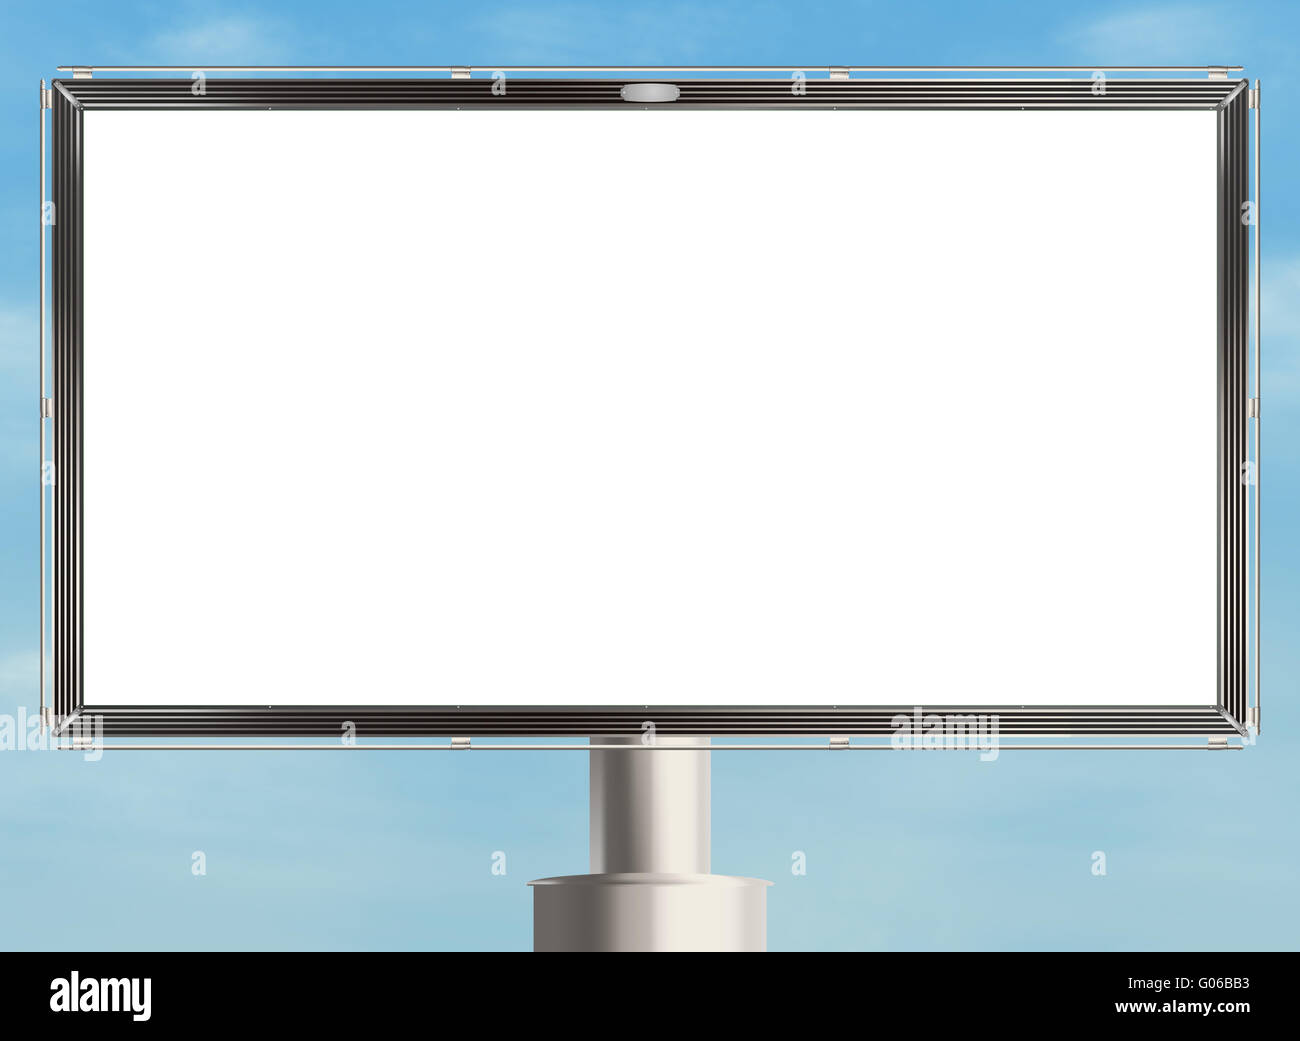 Leeren Plakatwand mit weißen textfreiraum auf der Himmelshintergrund. Raster-Abbildung. Stockfoto